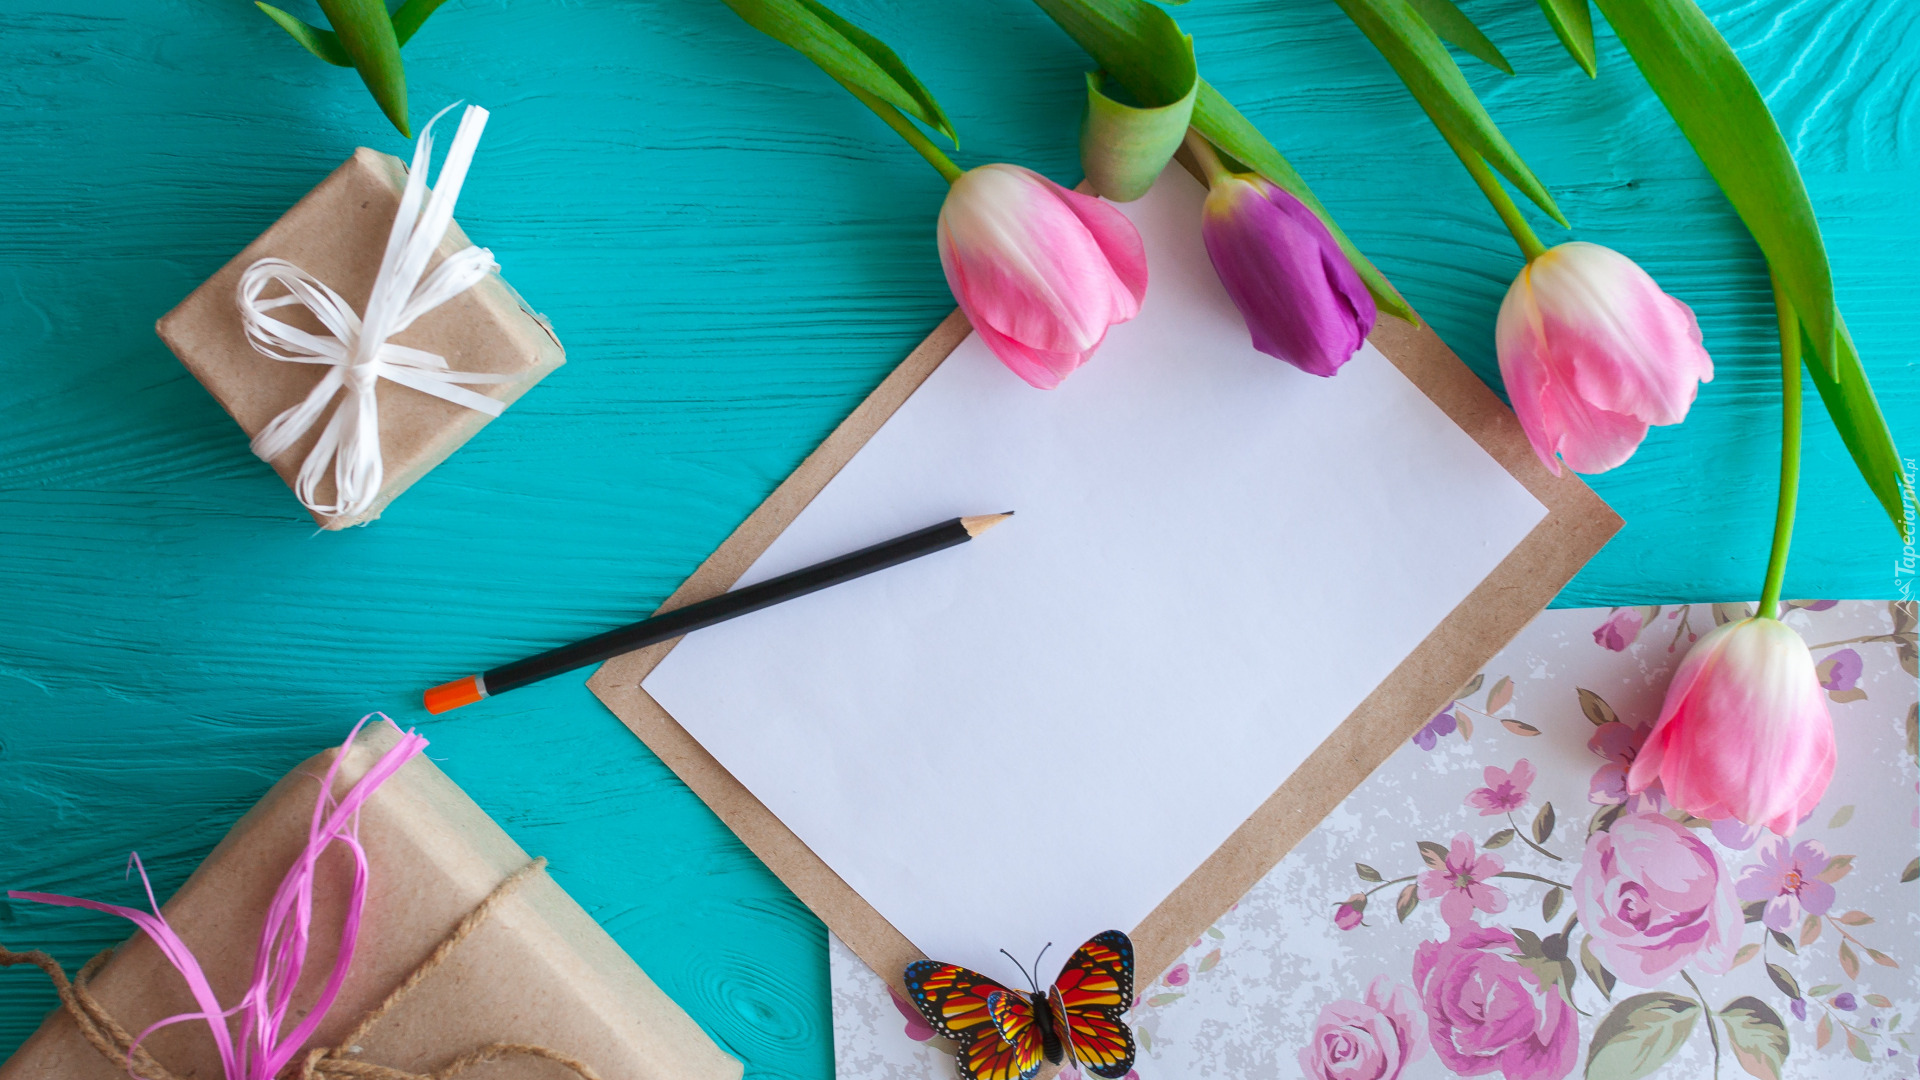 Notes, Ołówek Kwiaty, Tulipany, Motylek, Kolorowy, Papier, Opakowane, Pudełka, Prezenty